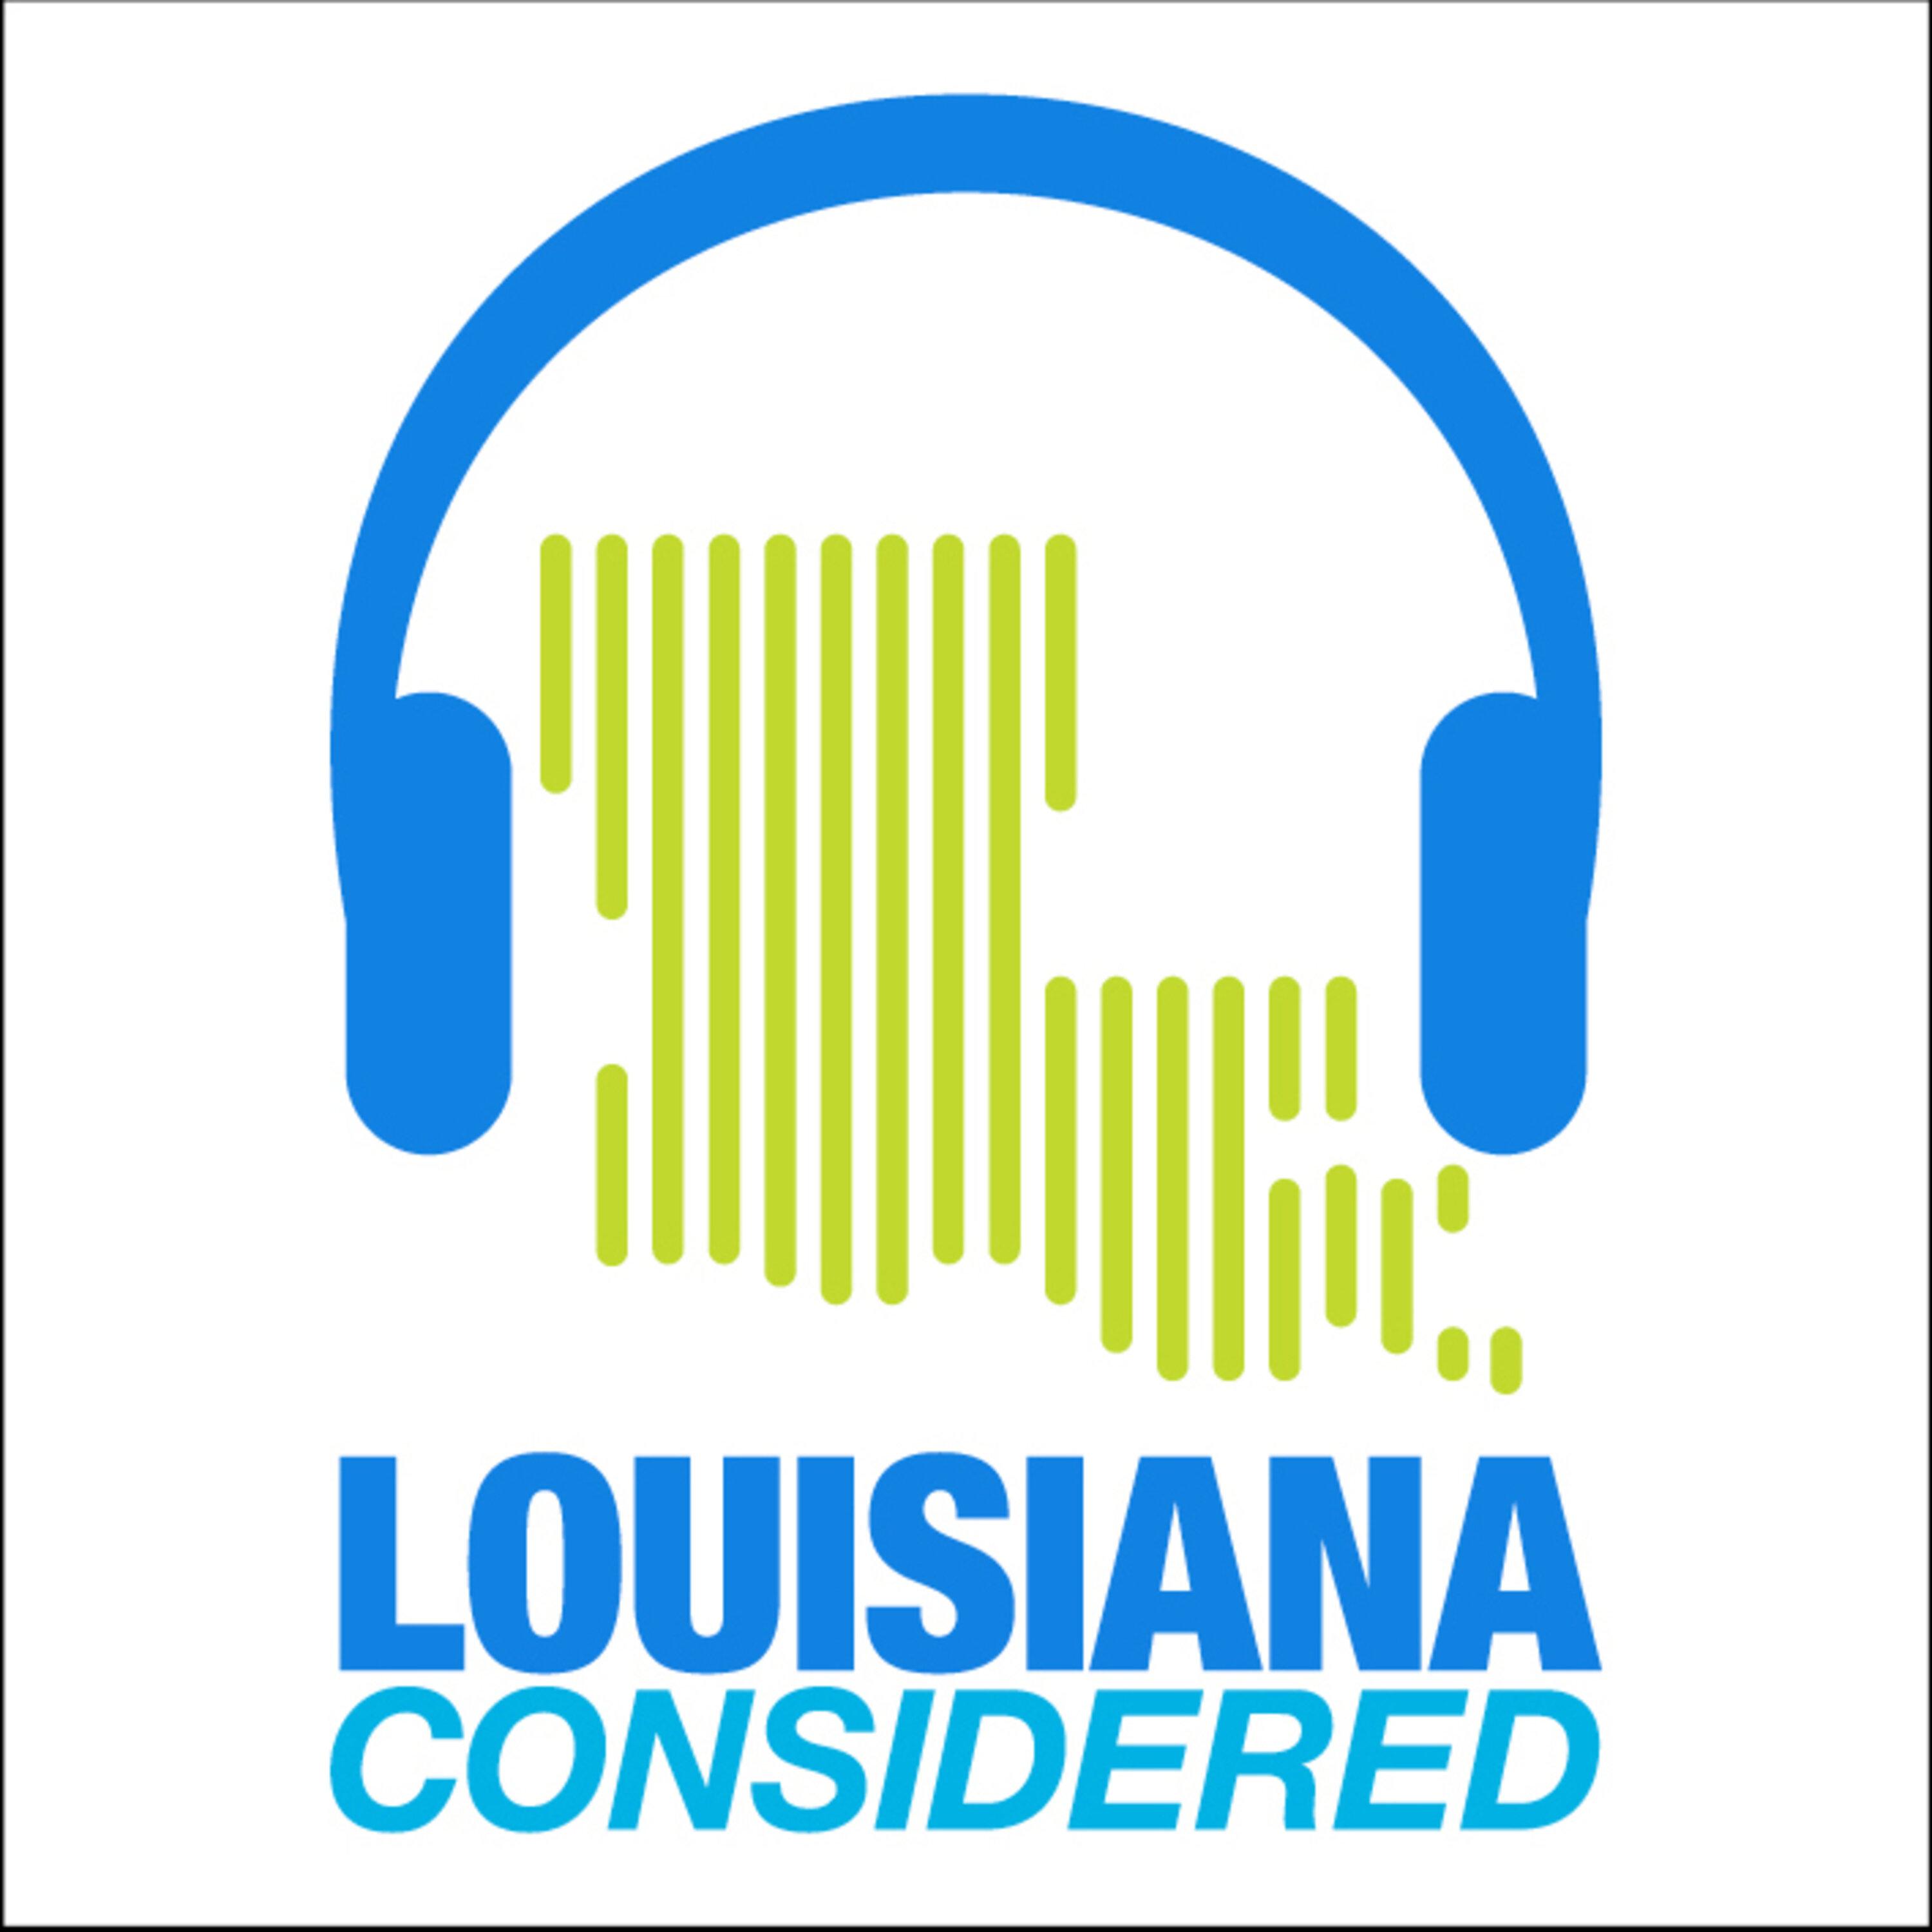 Thumbnail for "Louisiana Considered: How “free” is Louisiana?".